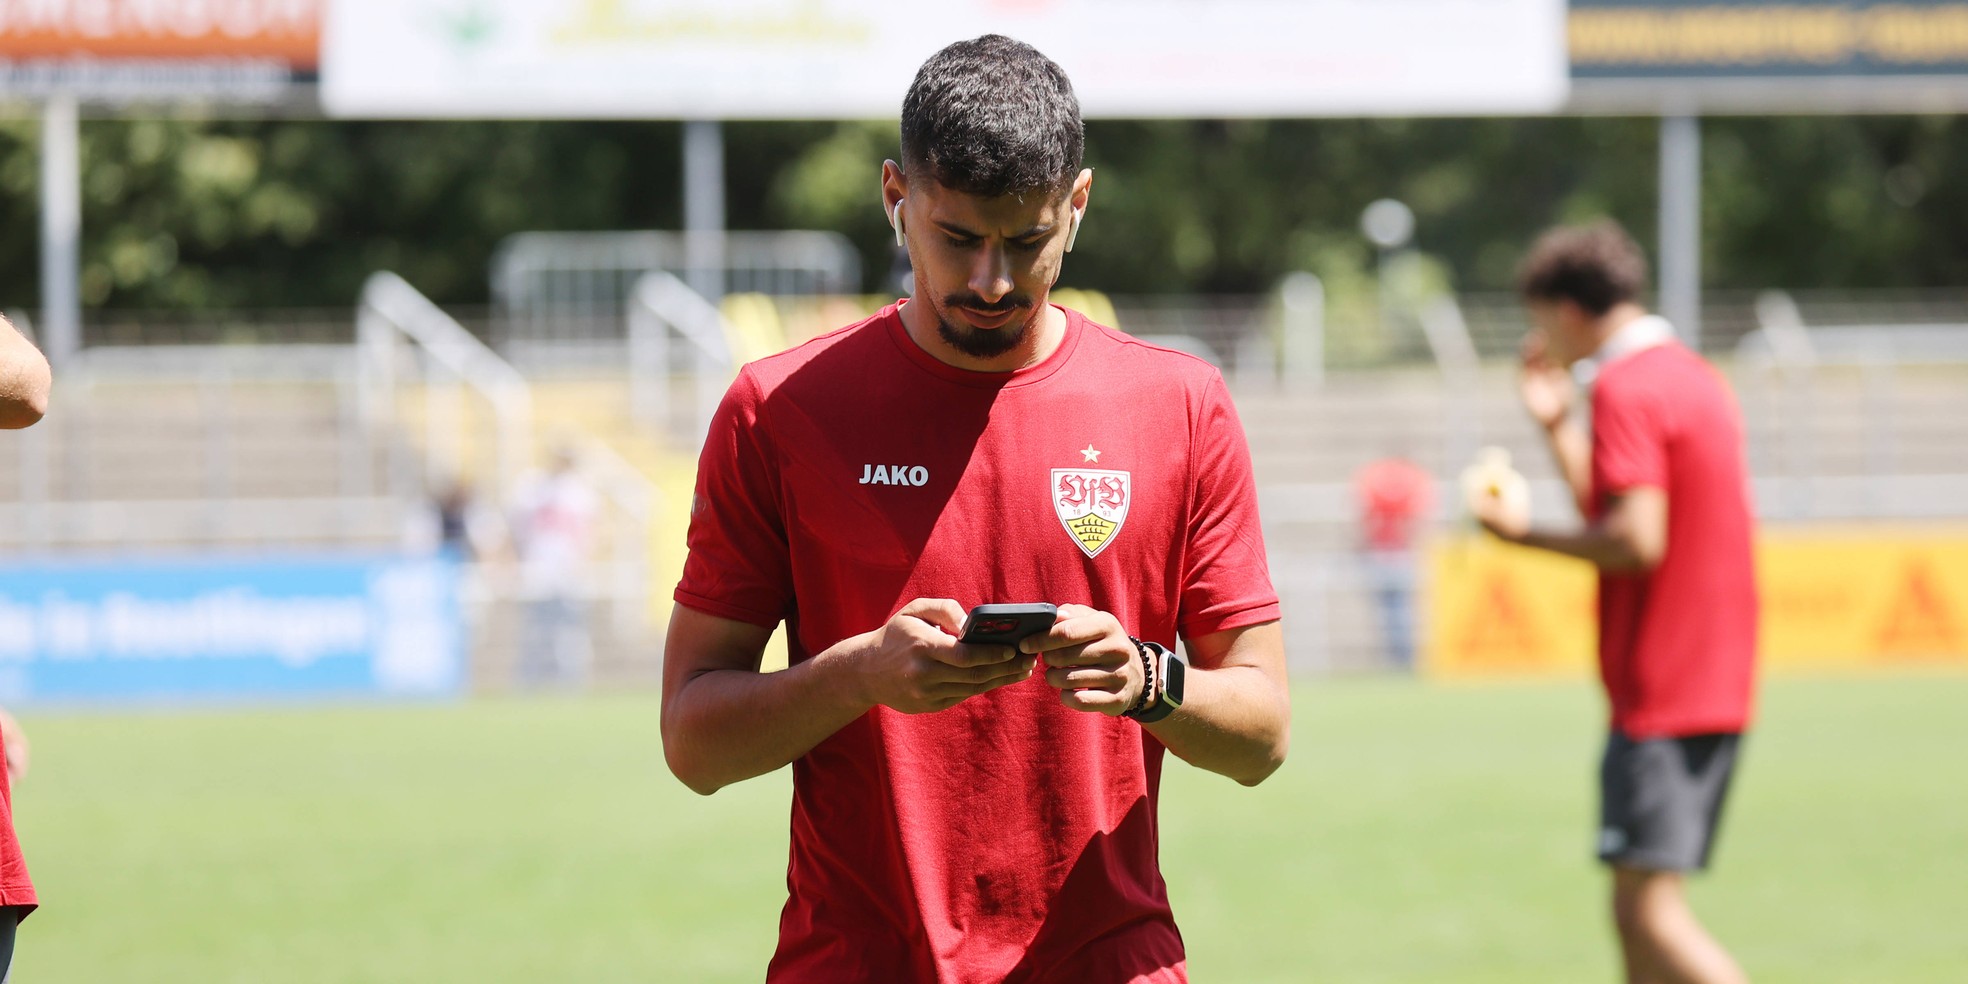 Gil Dias könnte den VfB Stuttgart verlassen - aktuelle Transfergerüchte